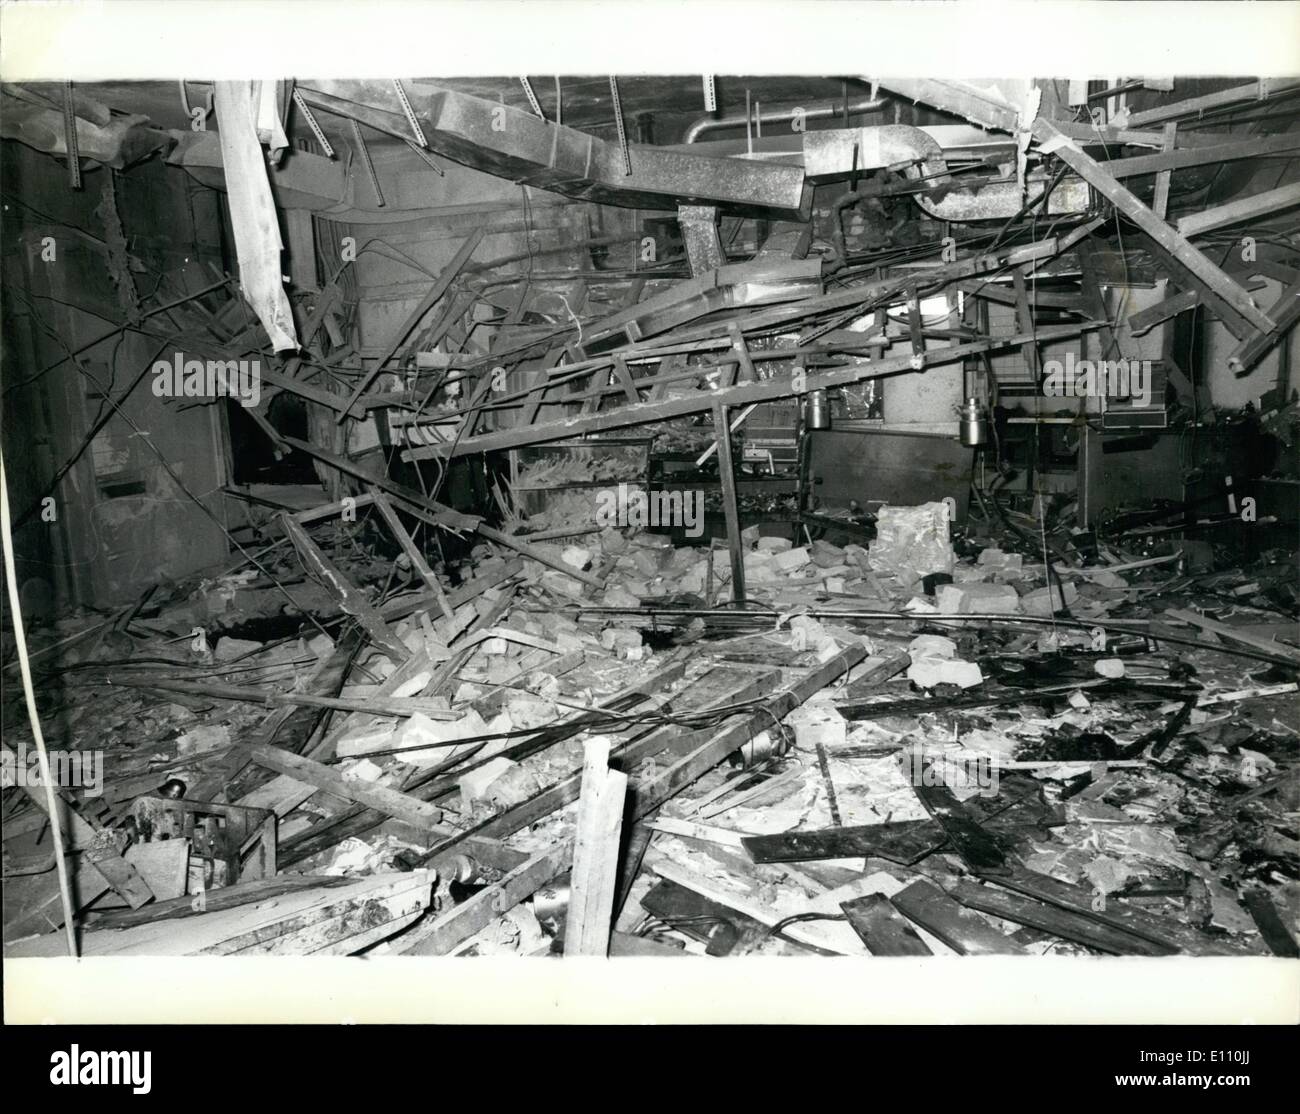 Nov. 11, 1974 - 19 morti e molti feriti in attentati dinamitardi a Birmingham. 19 persone sono state uccise e 200 feriti da IRA le bombe dei terroristi che è esplosa in due case pubbliche nel centro di Birmingham la scorsa notte. Una bomba è stata al Mulberry Bush public house e l'altra presso la taverna della città. Keystone Foto Mostra: vista che mostra la devastazione causata dalla bomba al Mulberry Bush public house di Birmingham la scorsa notte. Foto Stock